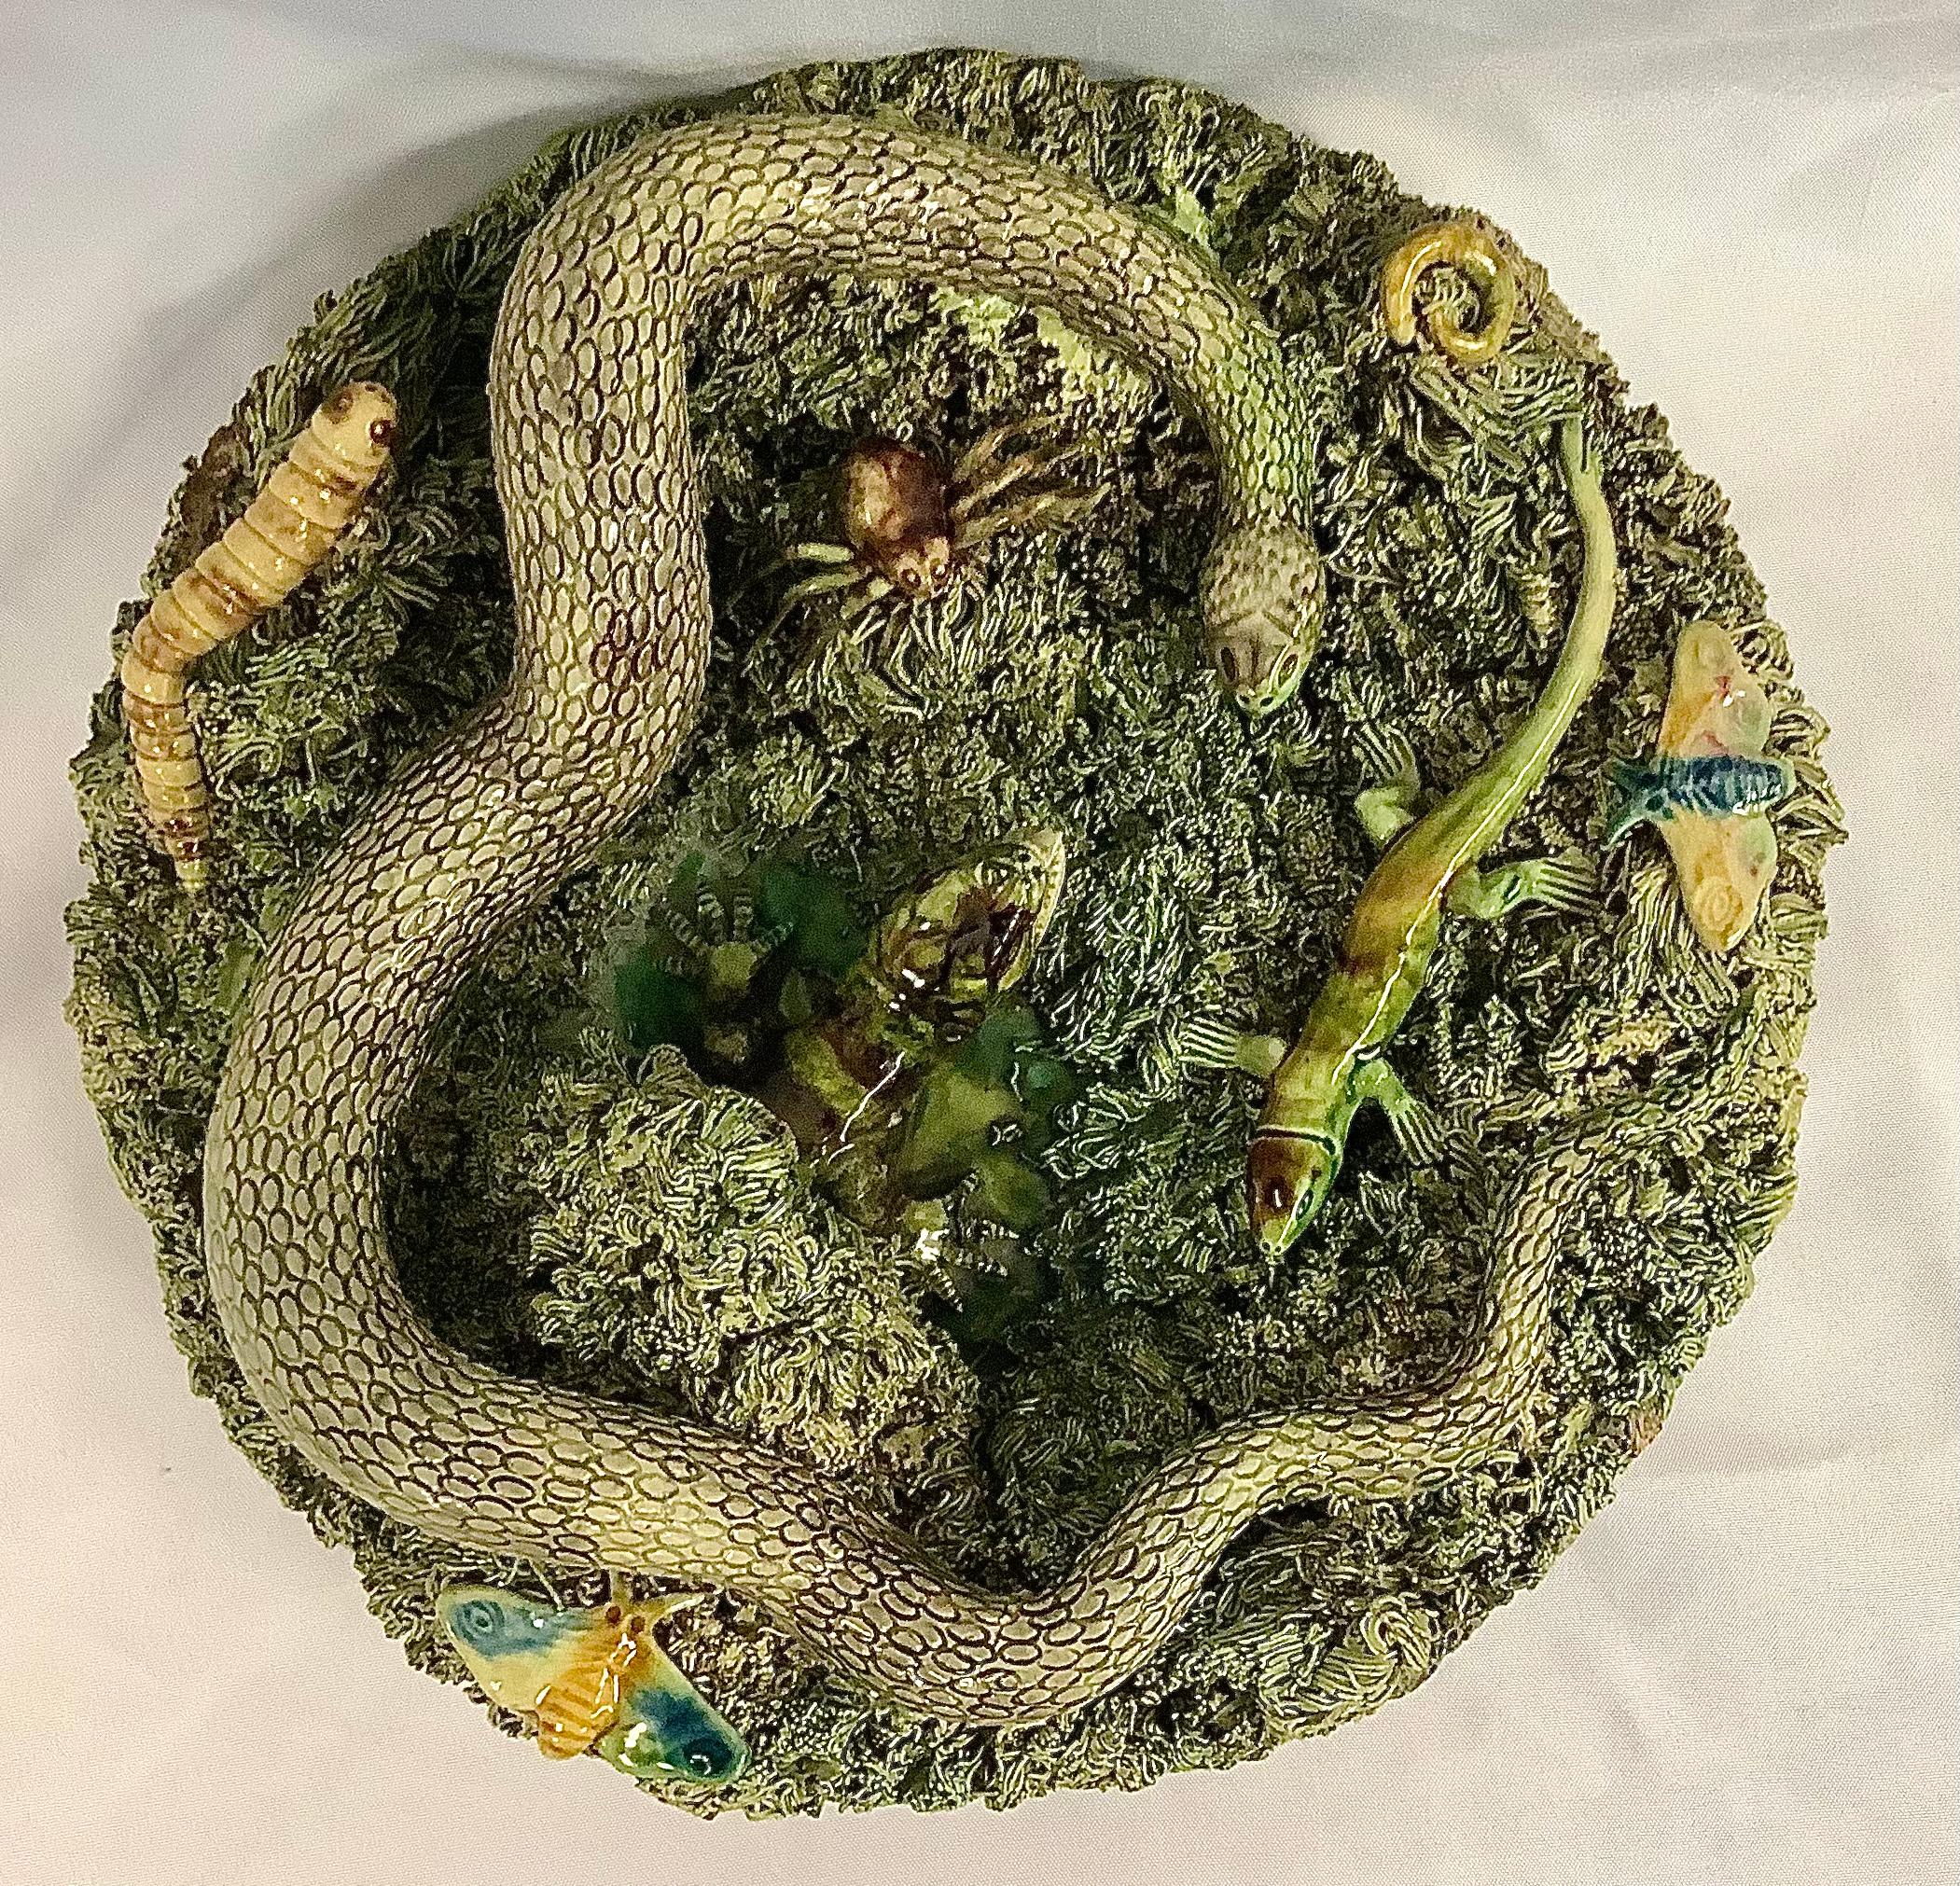 Ancienne assiette de style Palissy en majolique portugaise du XIXe siècle. L'assiette est centrée sur un grand serpent et un grand lézard, avec un ver, une chenille, un papillon et un lézard entourés d'une touffe d'herbe brune et verte. A signé Jose